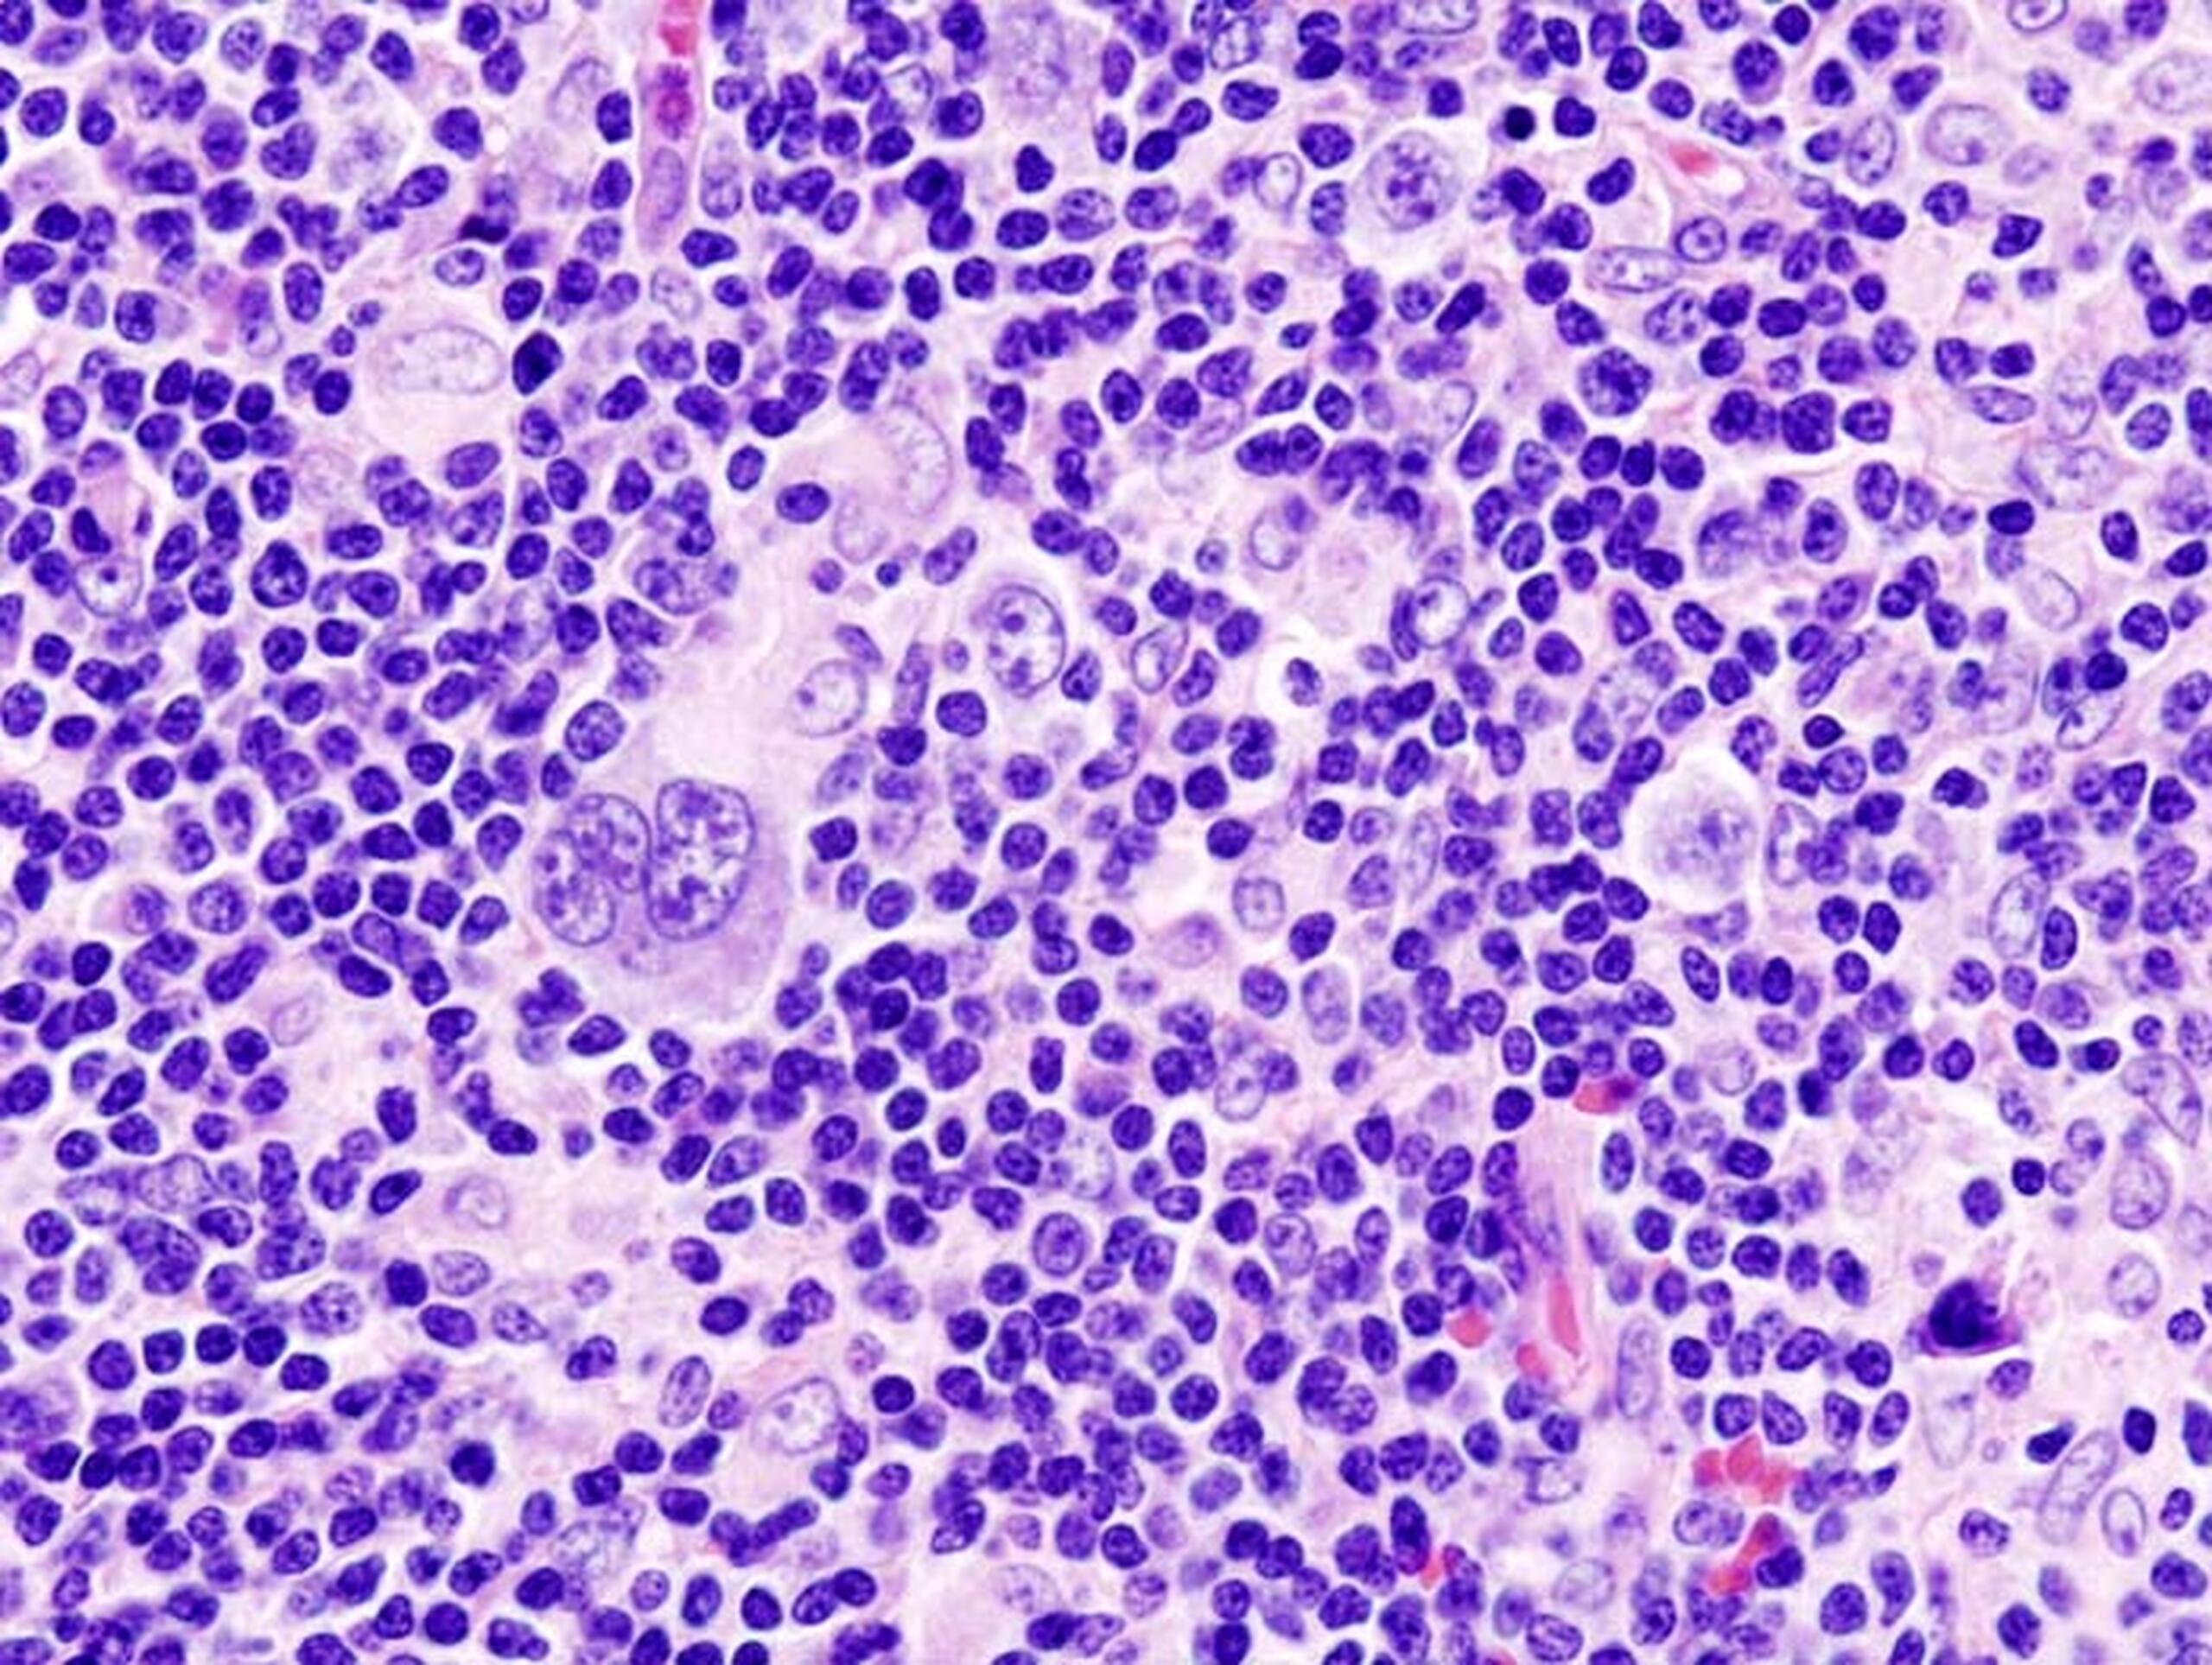 Histopathologisches Bild eines Hodgkin-Lymphoms. Probe aus einer Lymphknotenbiospie, Hämatoxylin/Eosin-Färbung. © KGH , CC BY-SA 3.0 DE